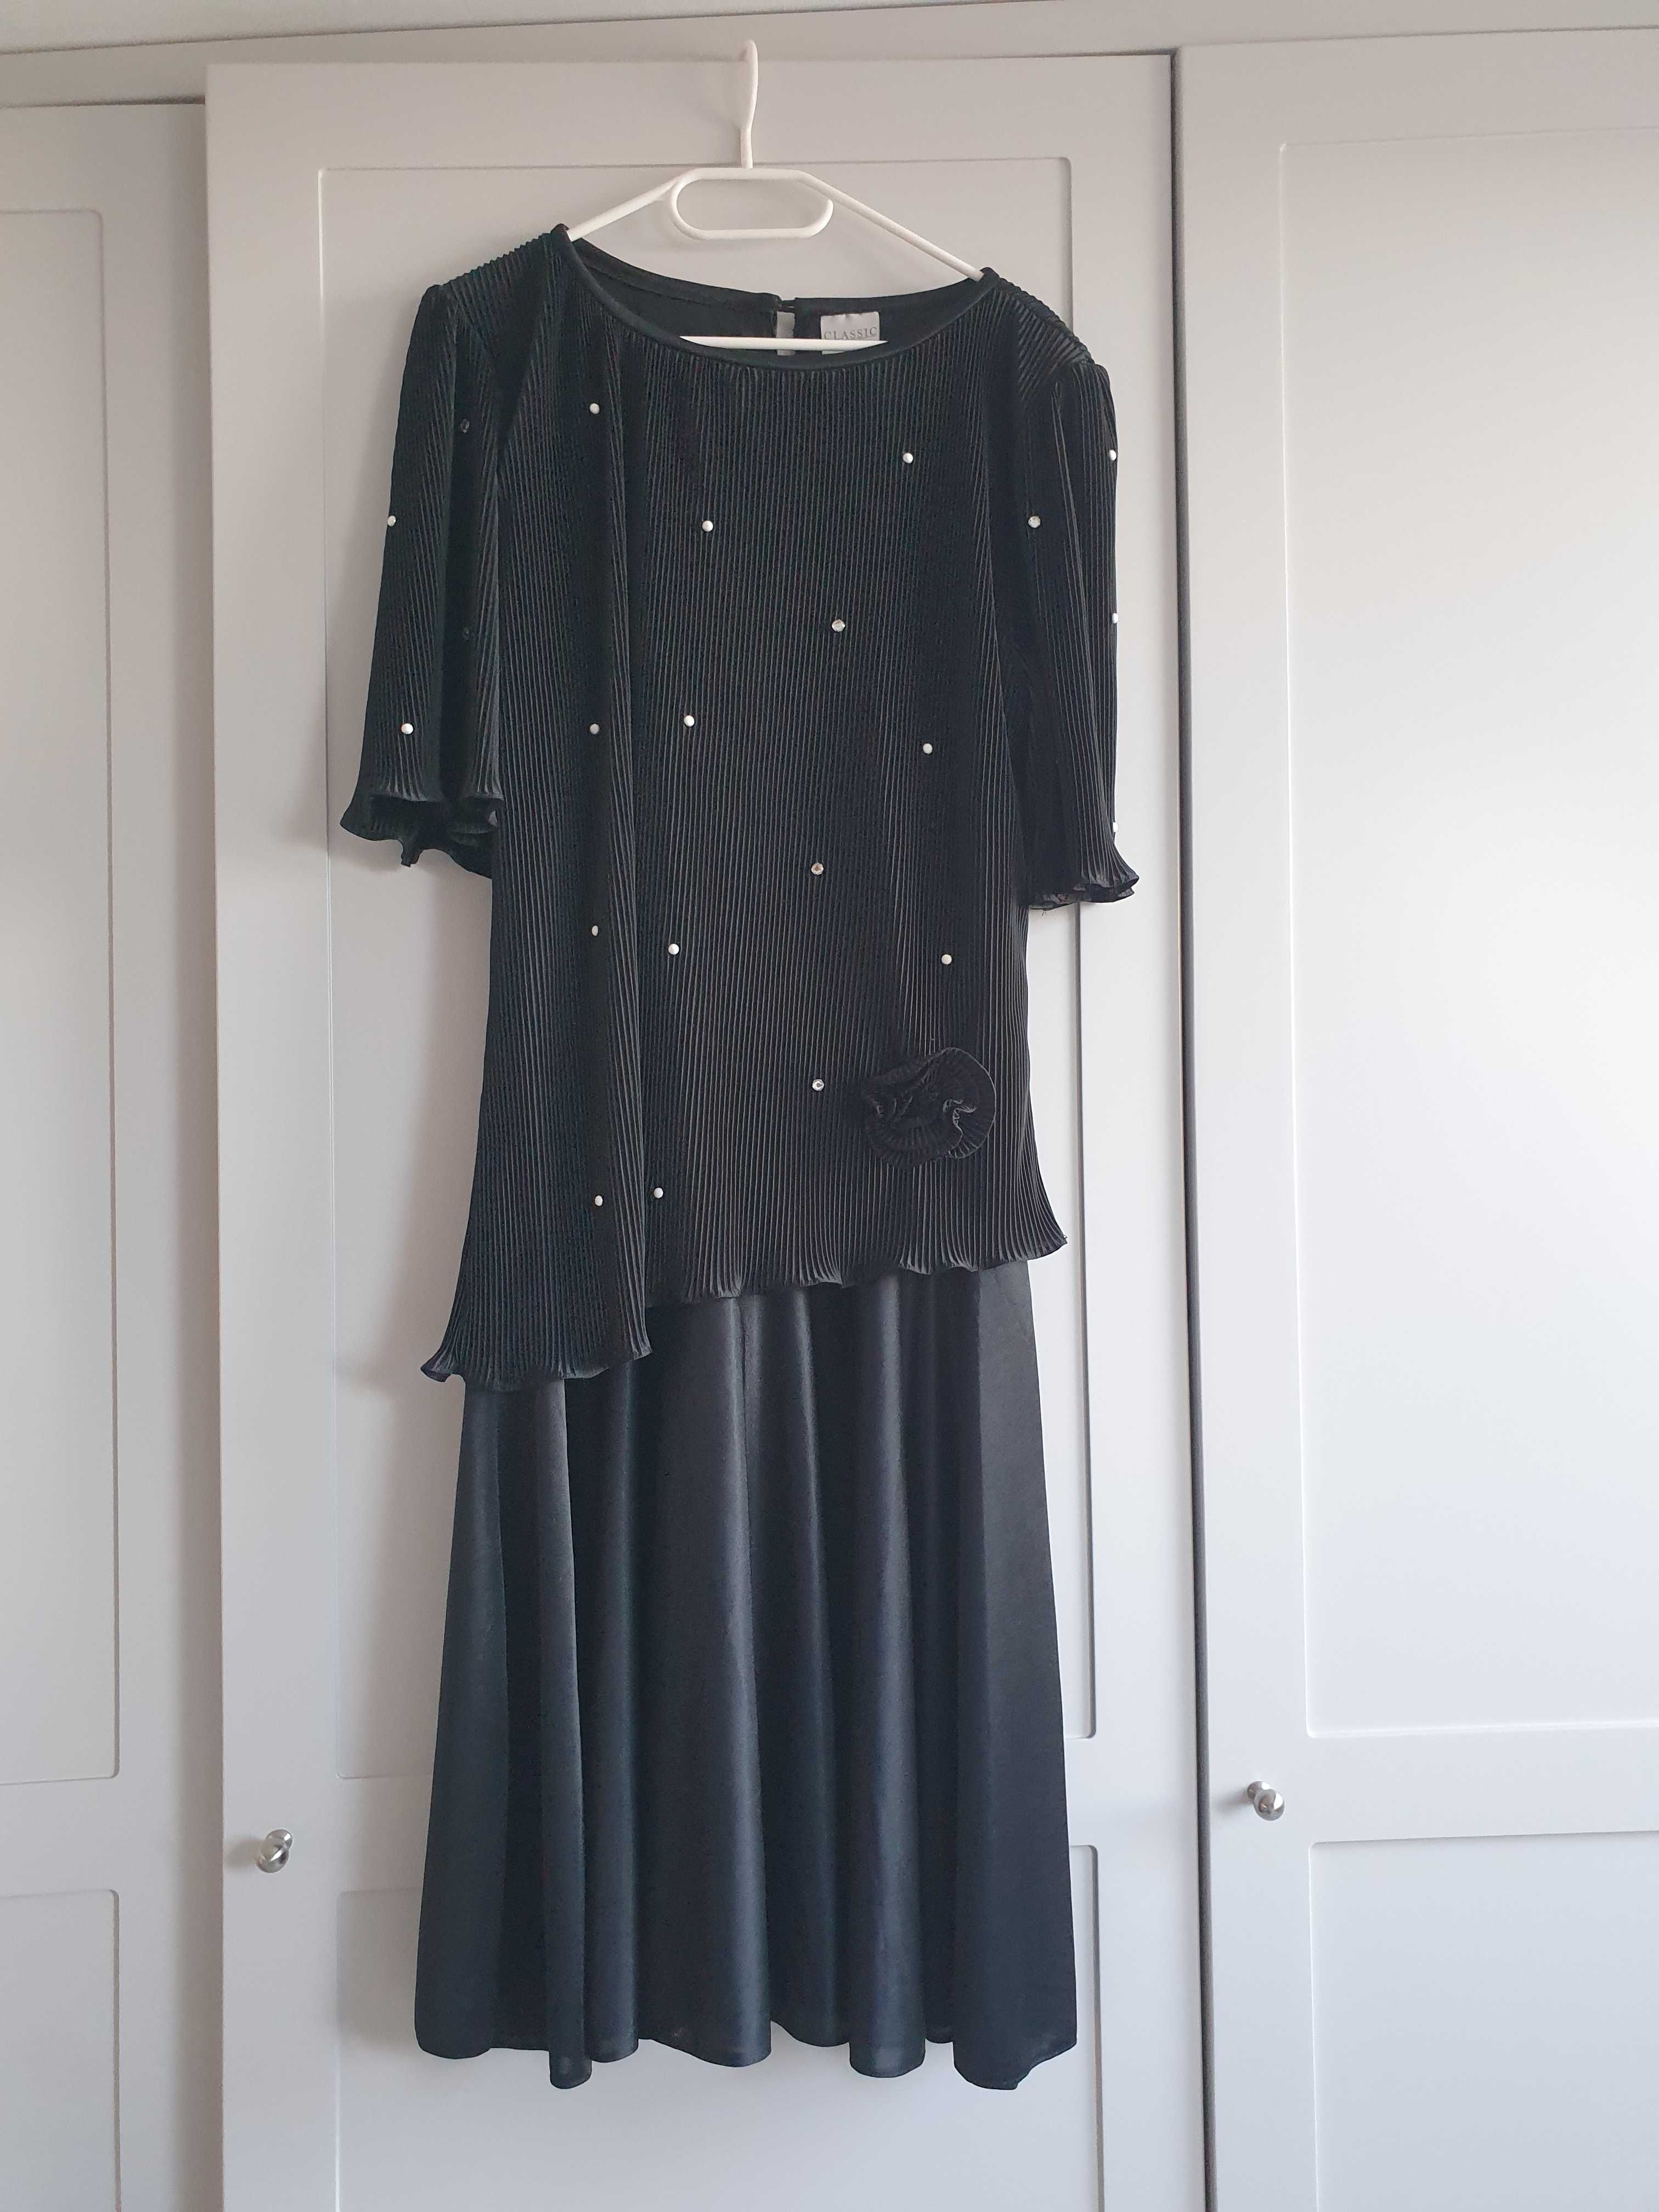 Czarna sukienka w stylu lat 20-tych retro vintage Classic  44 46